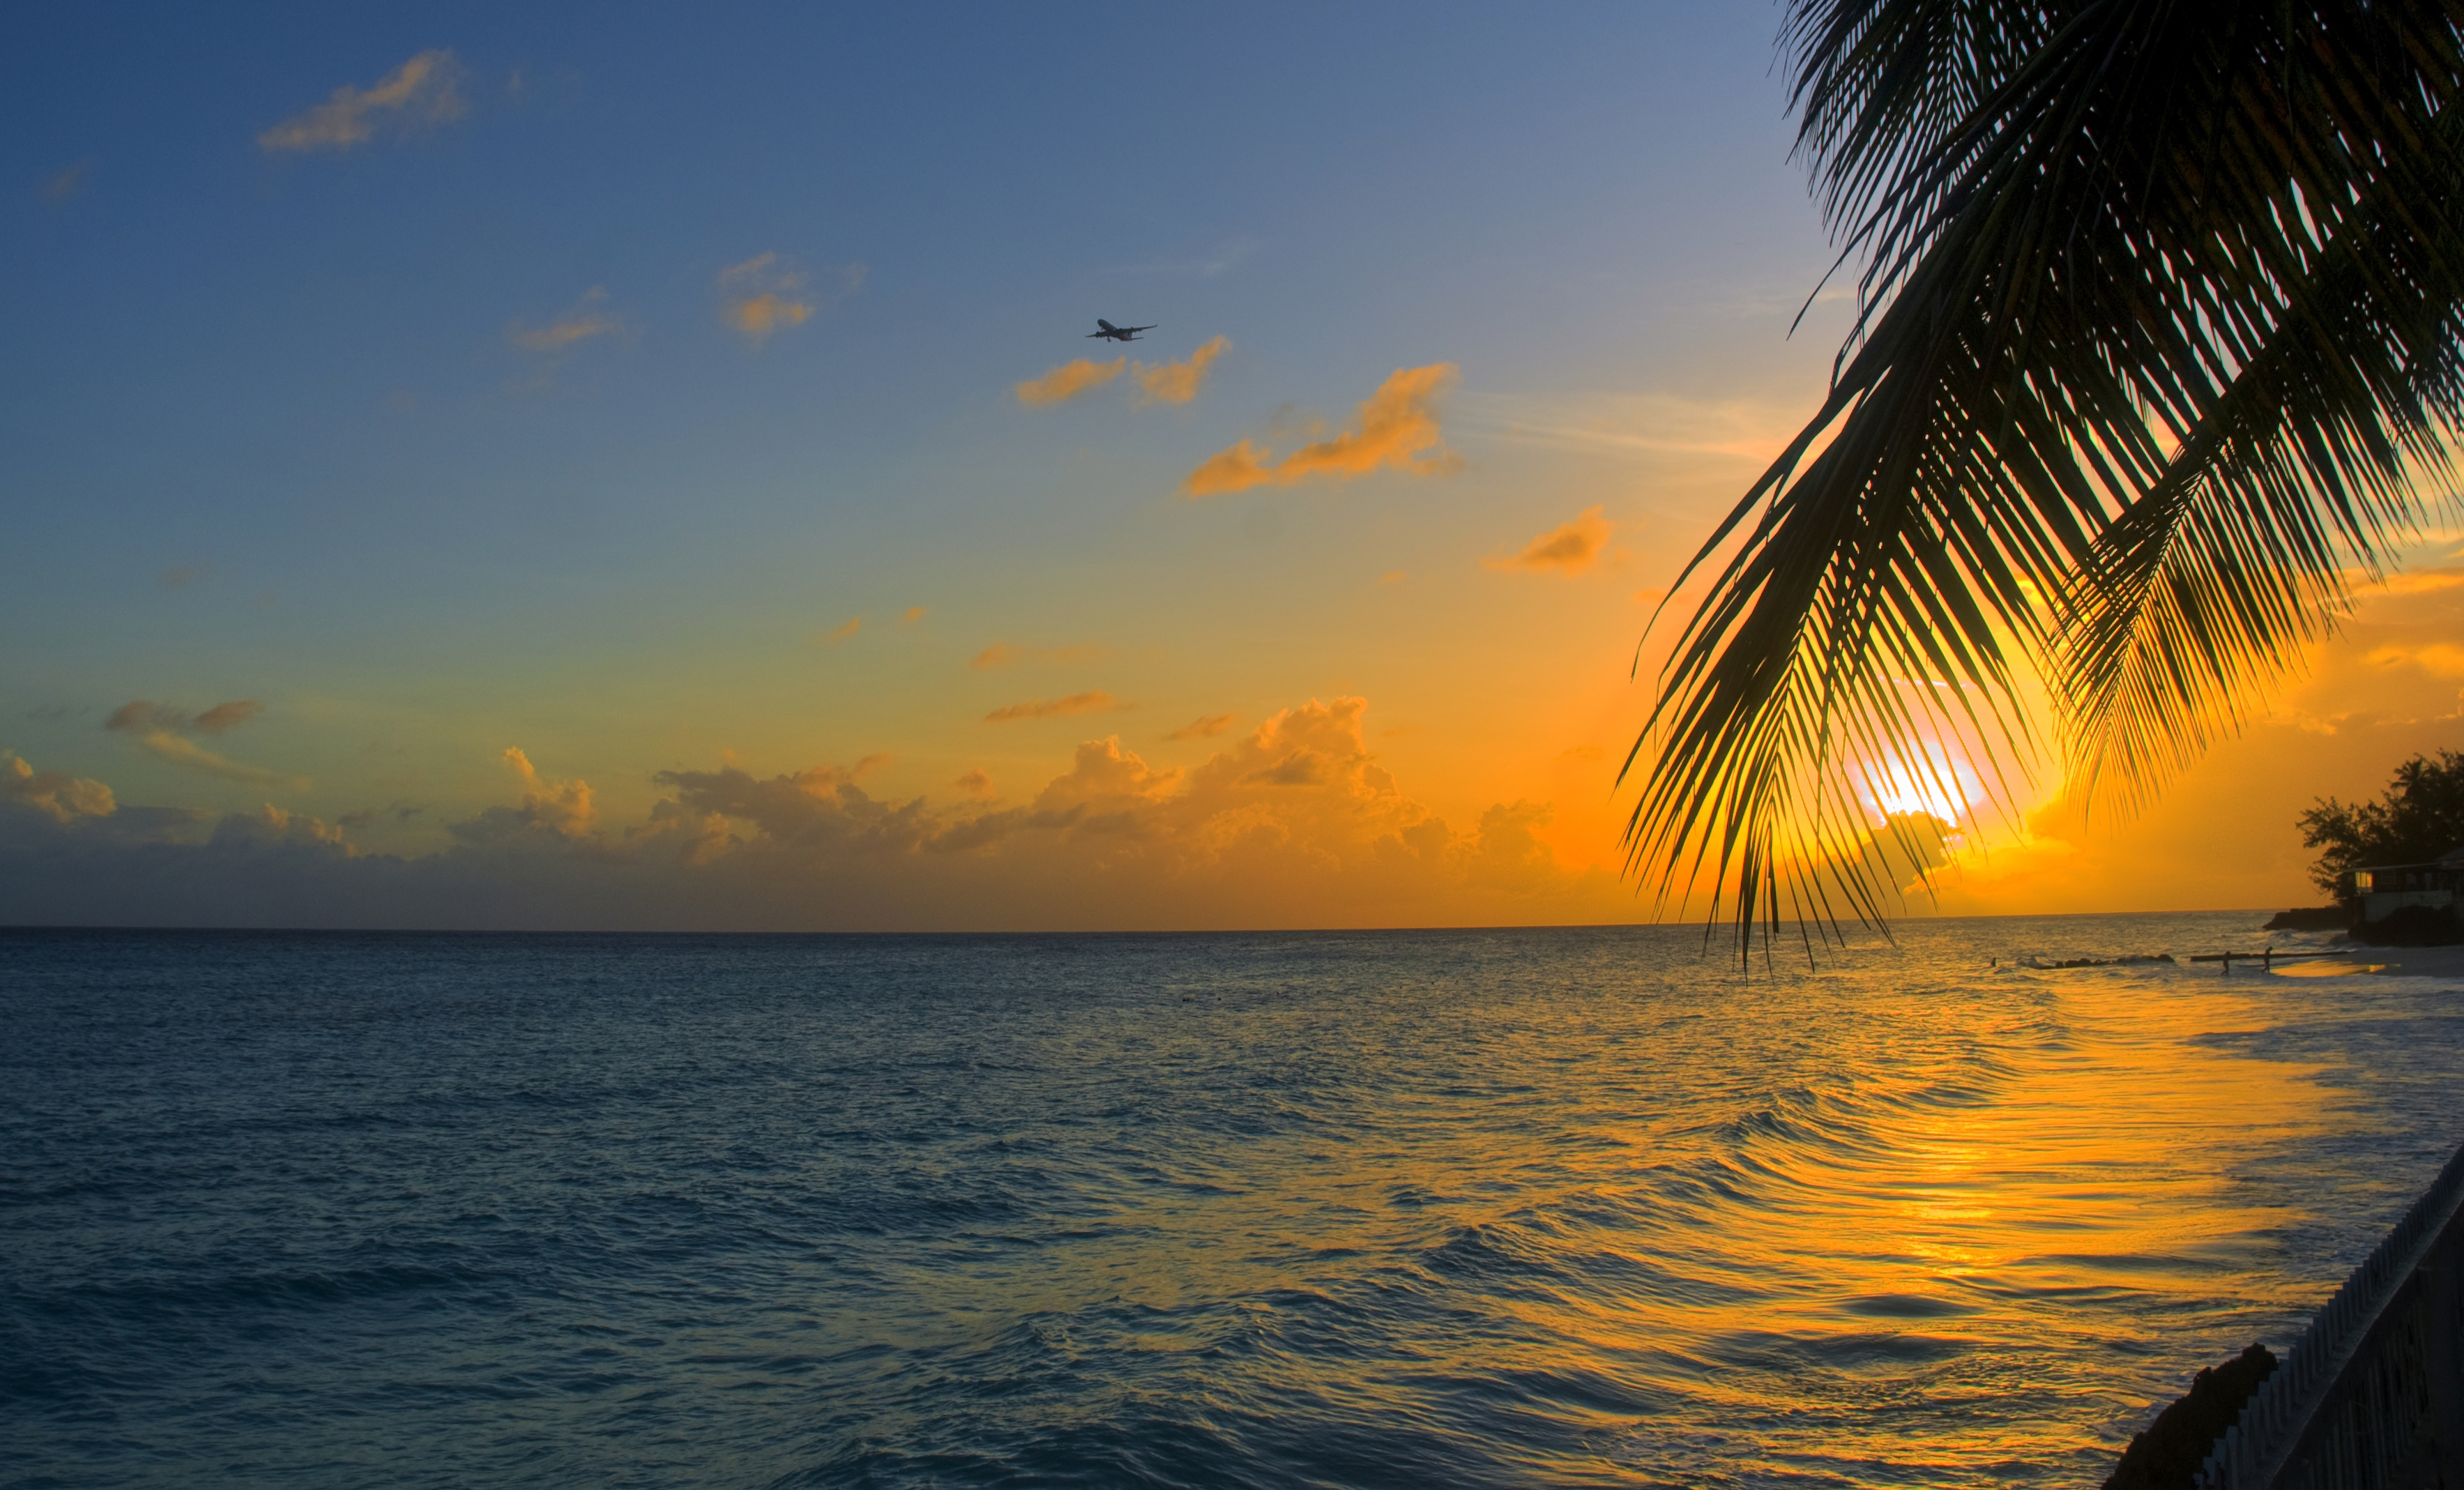 Скачать обои бесплатно Океан, Барбадос, Берег, Природа, Пальма, Закат картинка на рабочий стол ПК